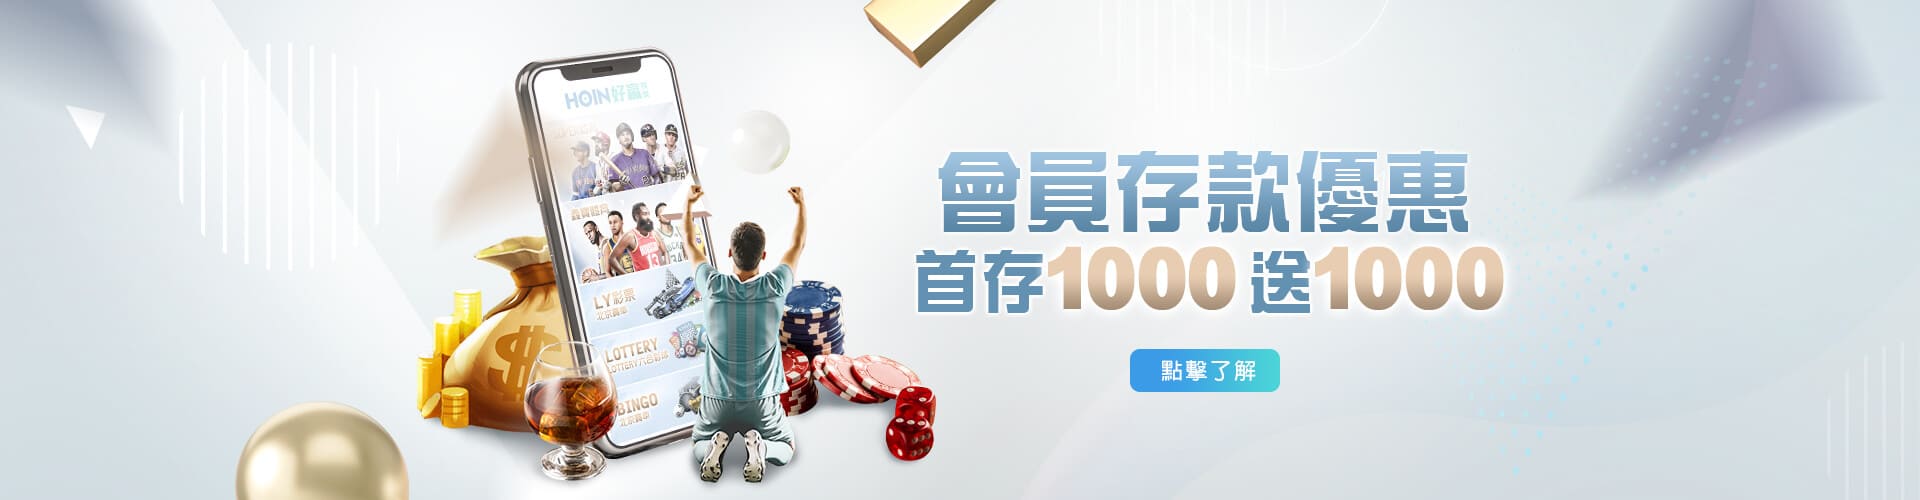 Play104娛樂城存款1000送1000優惠